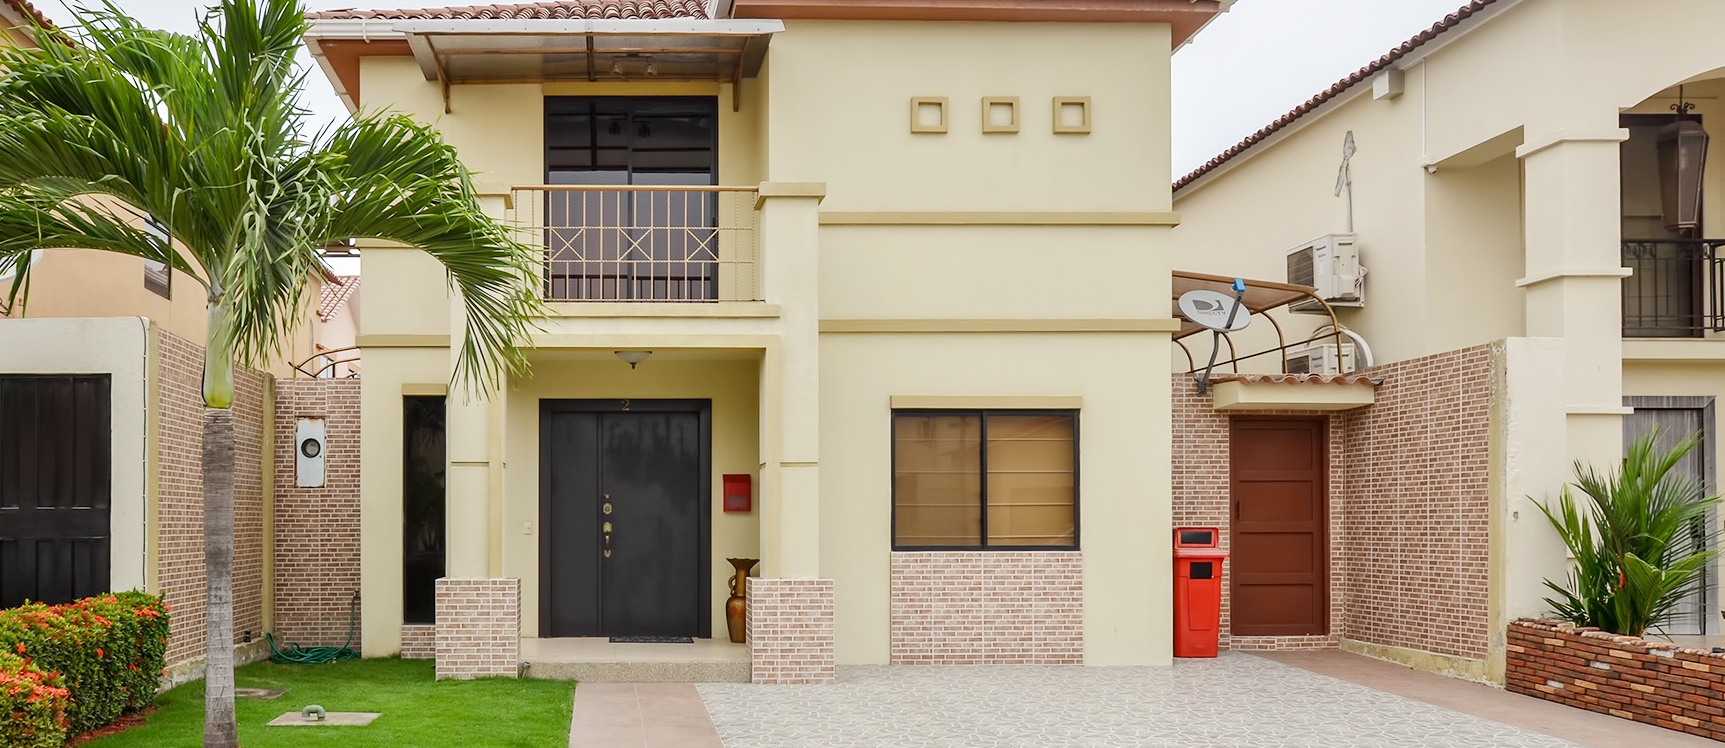 GeoBienes - Casa en venta en urbanización Ciudad Celeste sector Vía Samborondón - Plusvalia Guayaquil Casas de venta y alquiler Inmobiliaria Ecuador